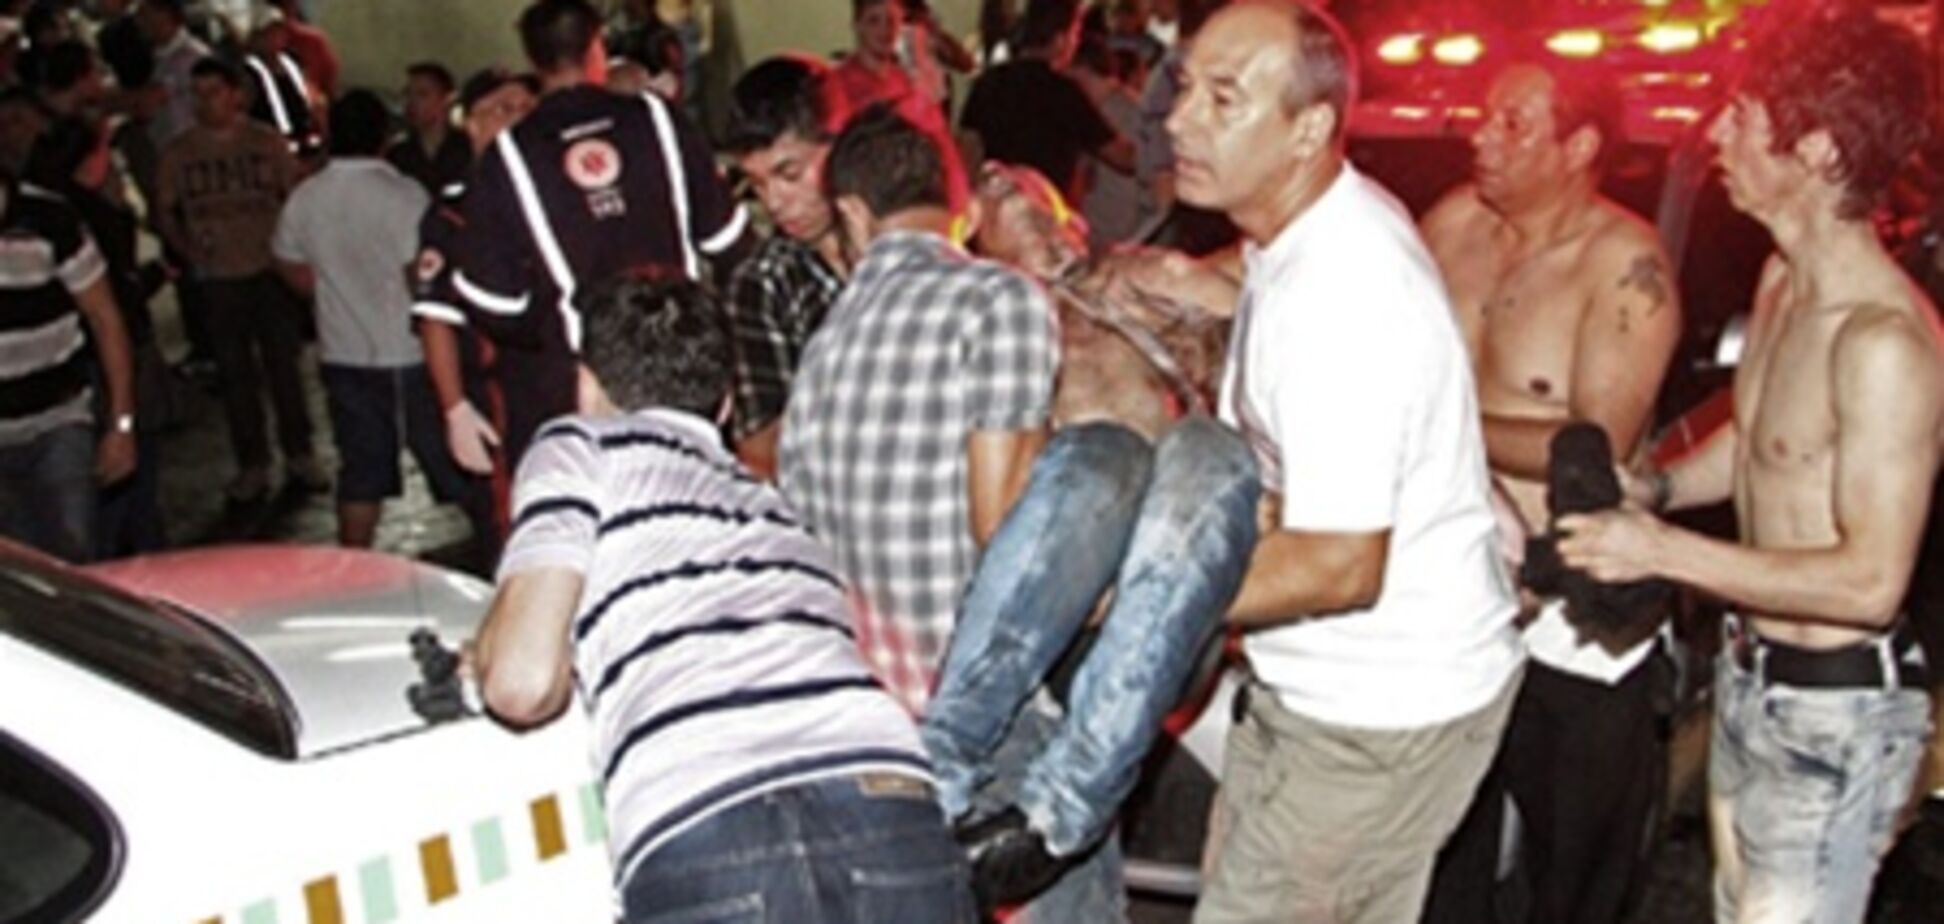 СМИ Бразилии назвали пожар в клубе крупнейшей трагедией за полвека